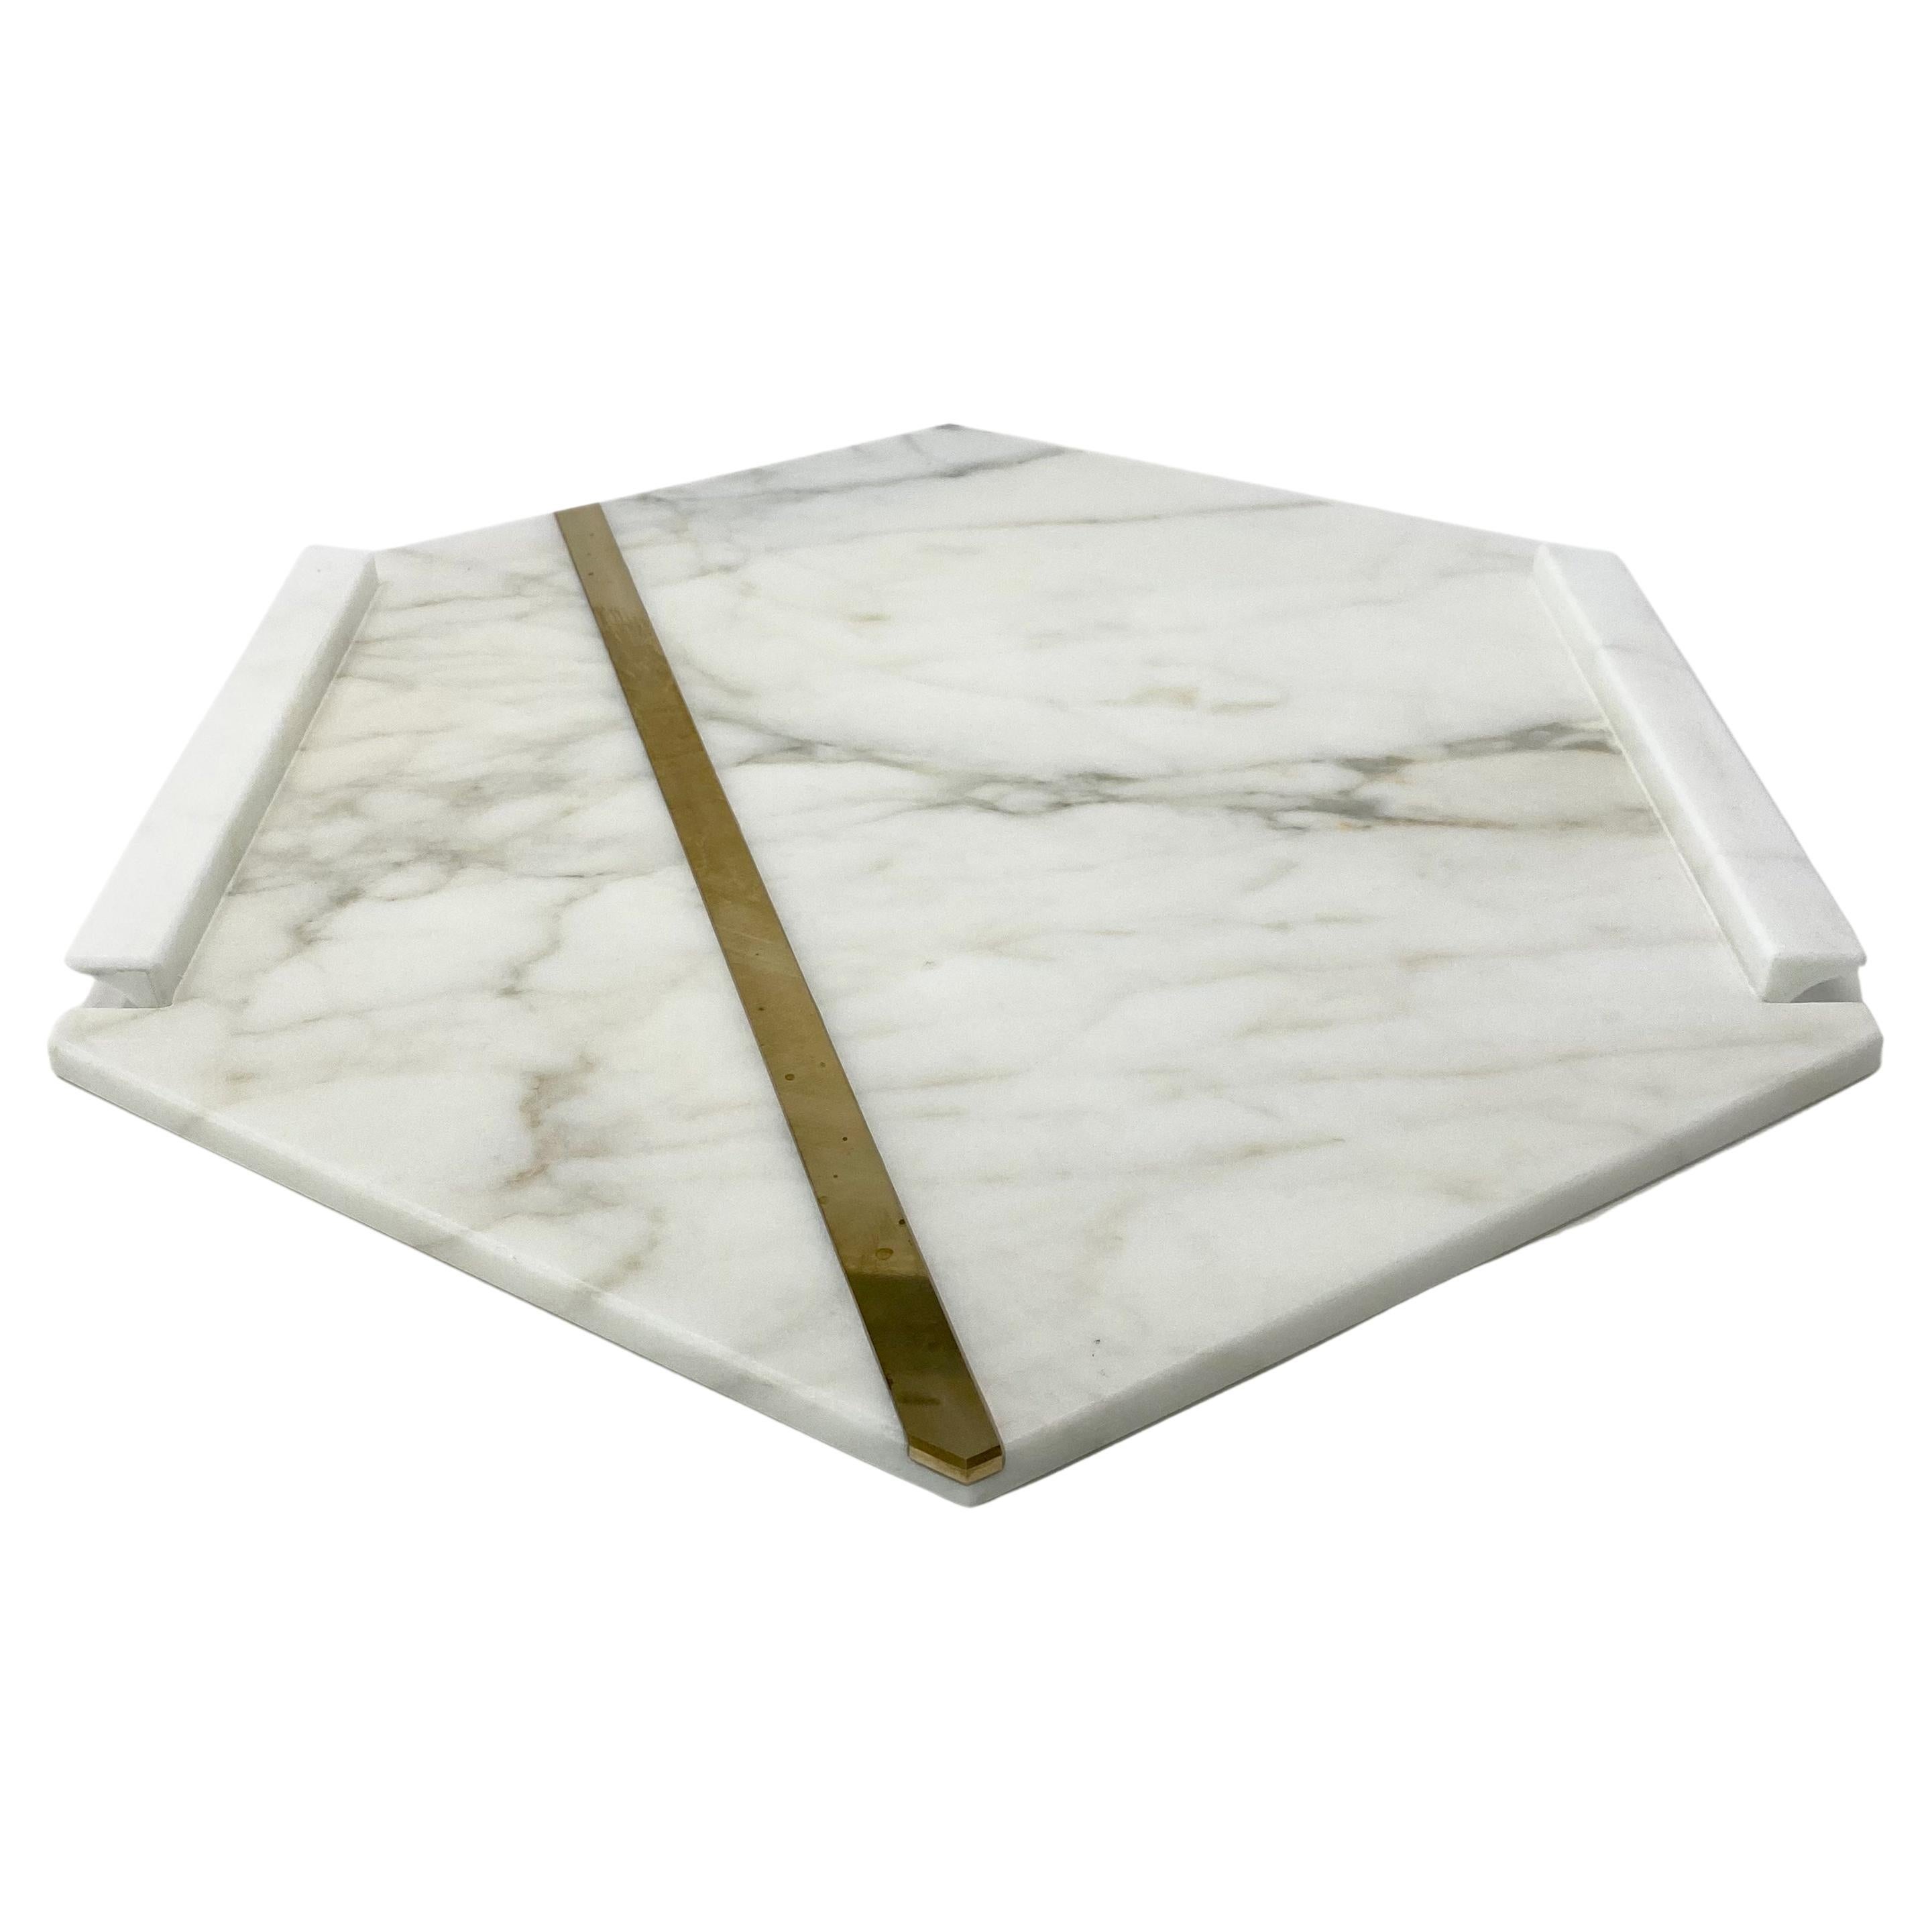 Le plateau Brass, entièrement réalisé en marbre, est un plateau exclusif en Calacatta Oro orné d'une patte en laiton qui parcourt l'objet d'un bout à l'autre, lui conférant ainsi une touche supplémentaire de style raffiné.

Le plateau en laiton fait